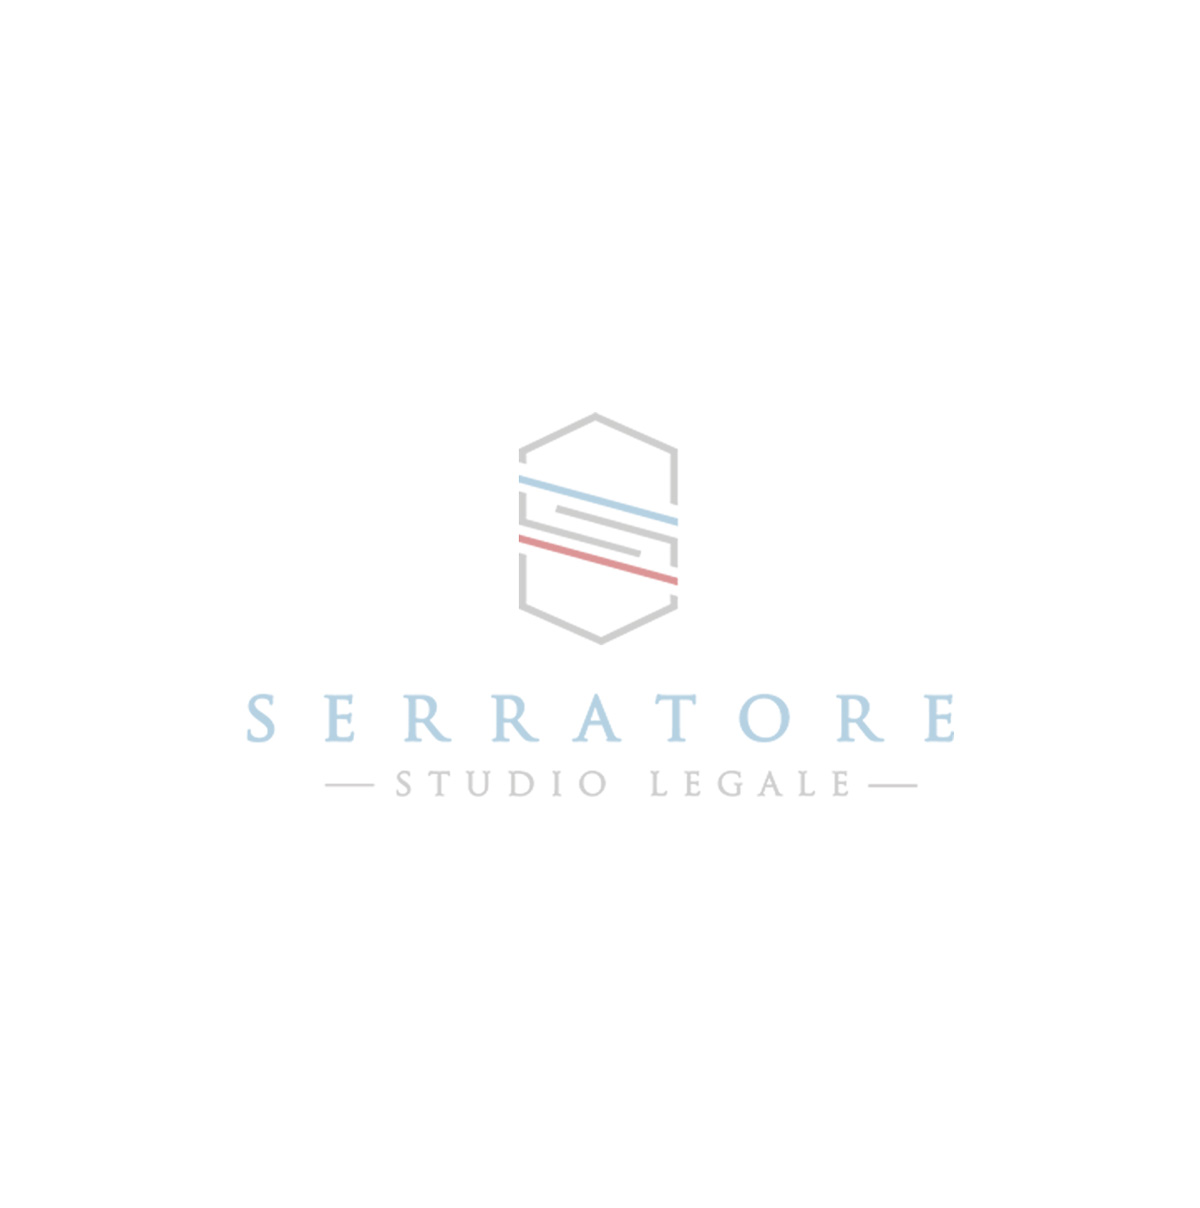 serratore_new_Tavola-disegno-1